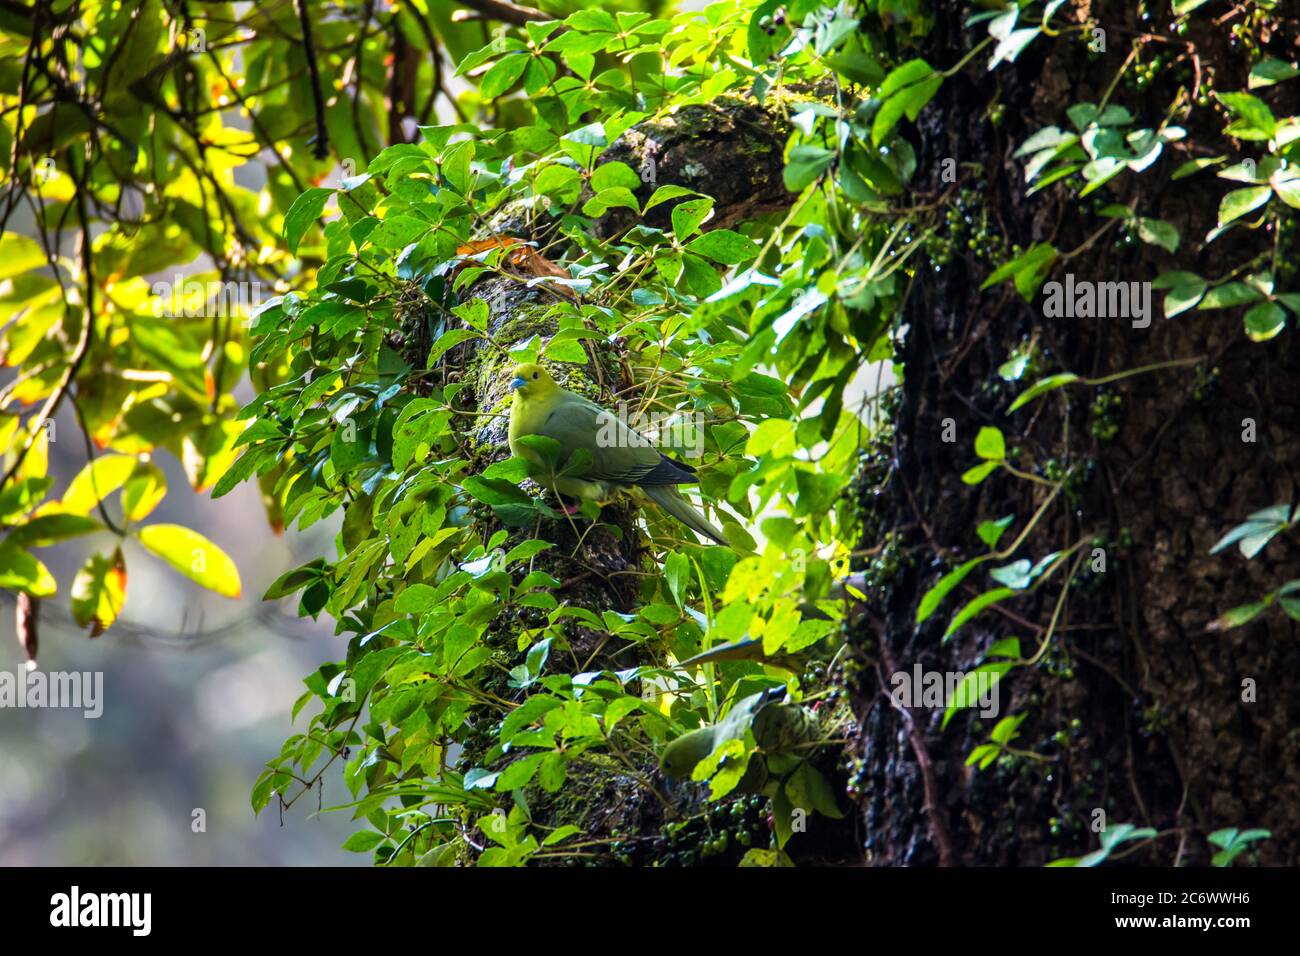 Keil-tailed Green-Taube oder Kokla Green Taube (Treron sphenurus) oder Hill Taube auf grünen Baum Zweig Stockfoto